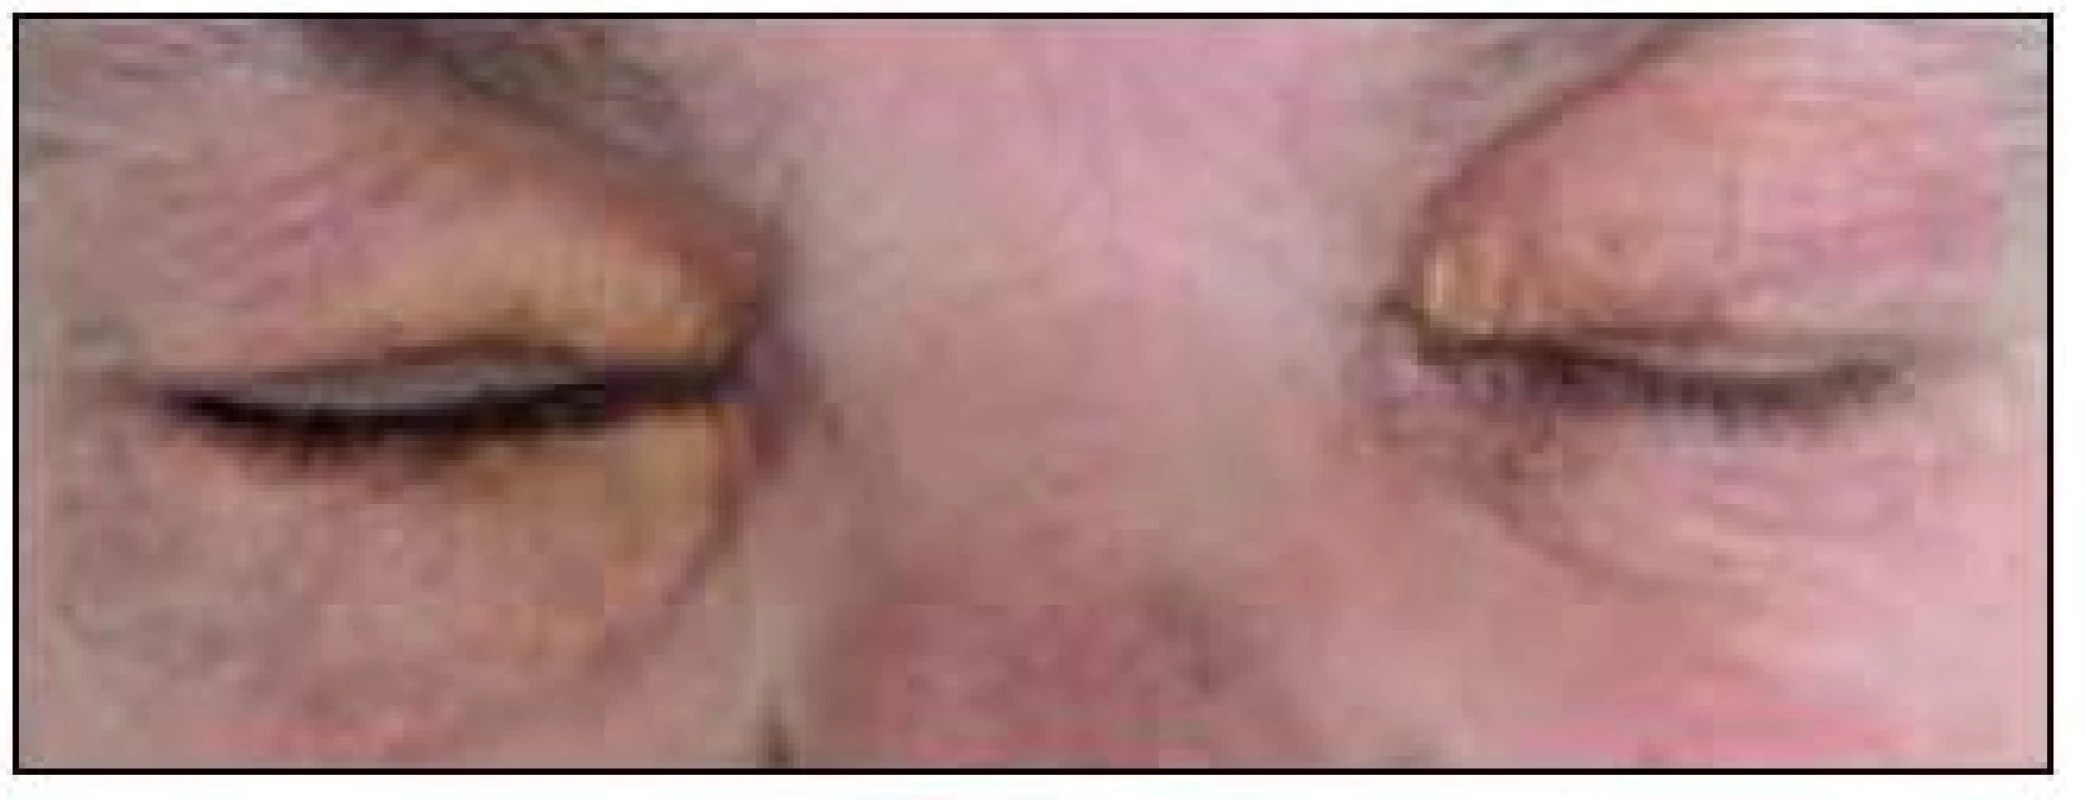 Periokulární xantogranulom. Na rozdíl od případu zobrazeného na obr. 1 zde tvoří xantomové buňky žlutavé granulomy, které však nezůstávající pouze na povrchu kůže, ale zasahují i do nitra orbity, jak ukazuje obr. 3, a mohou zhoršovat zrak.